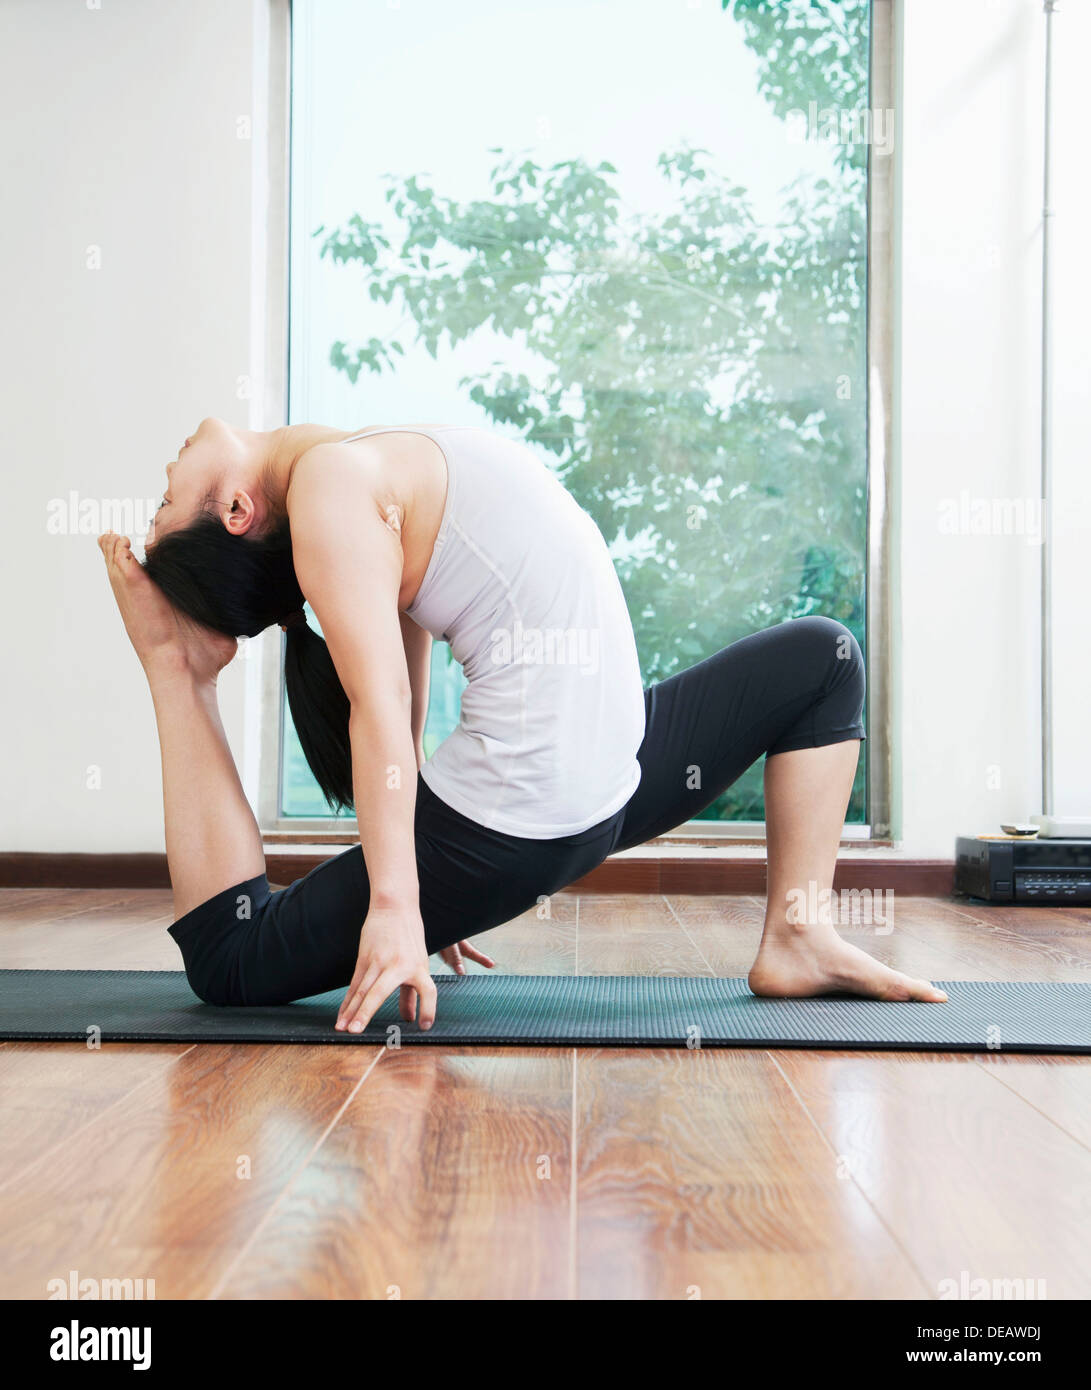 La mujer se inclinó hacia atrás en una posición de yoga en un estudio de yoga, vista lateral Foto de stock